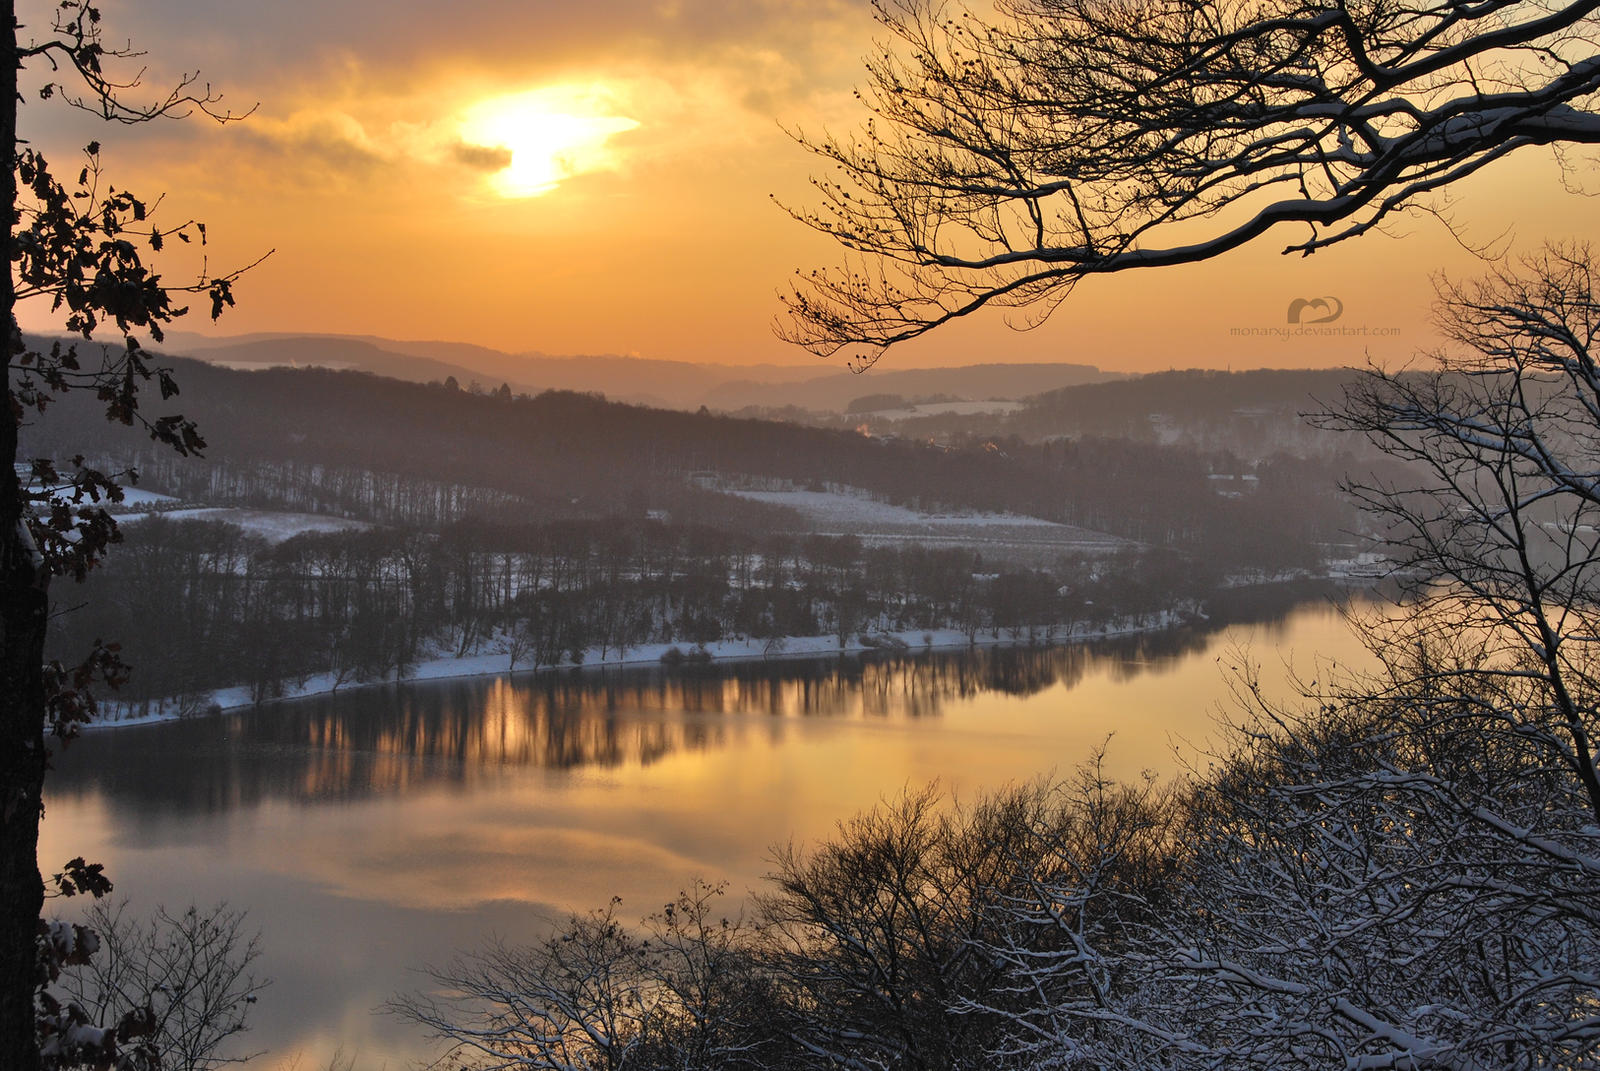 Beauty of Winter by monarxy on DeviantArt